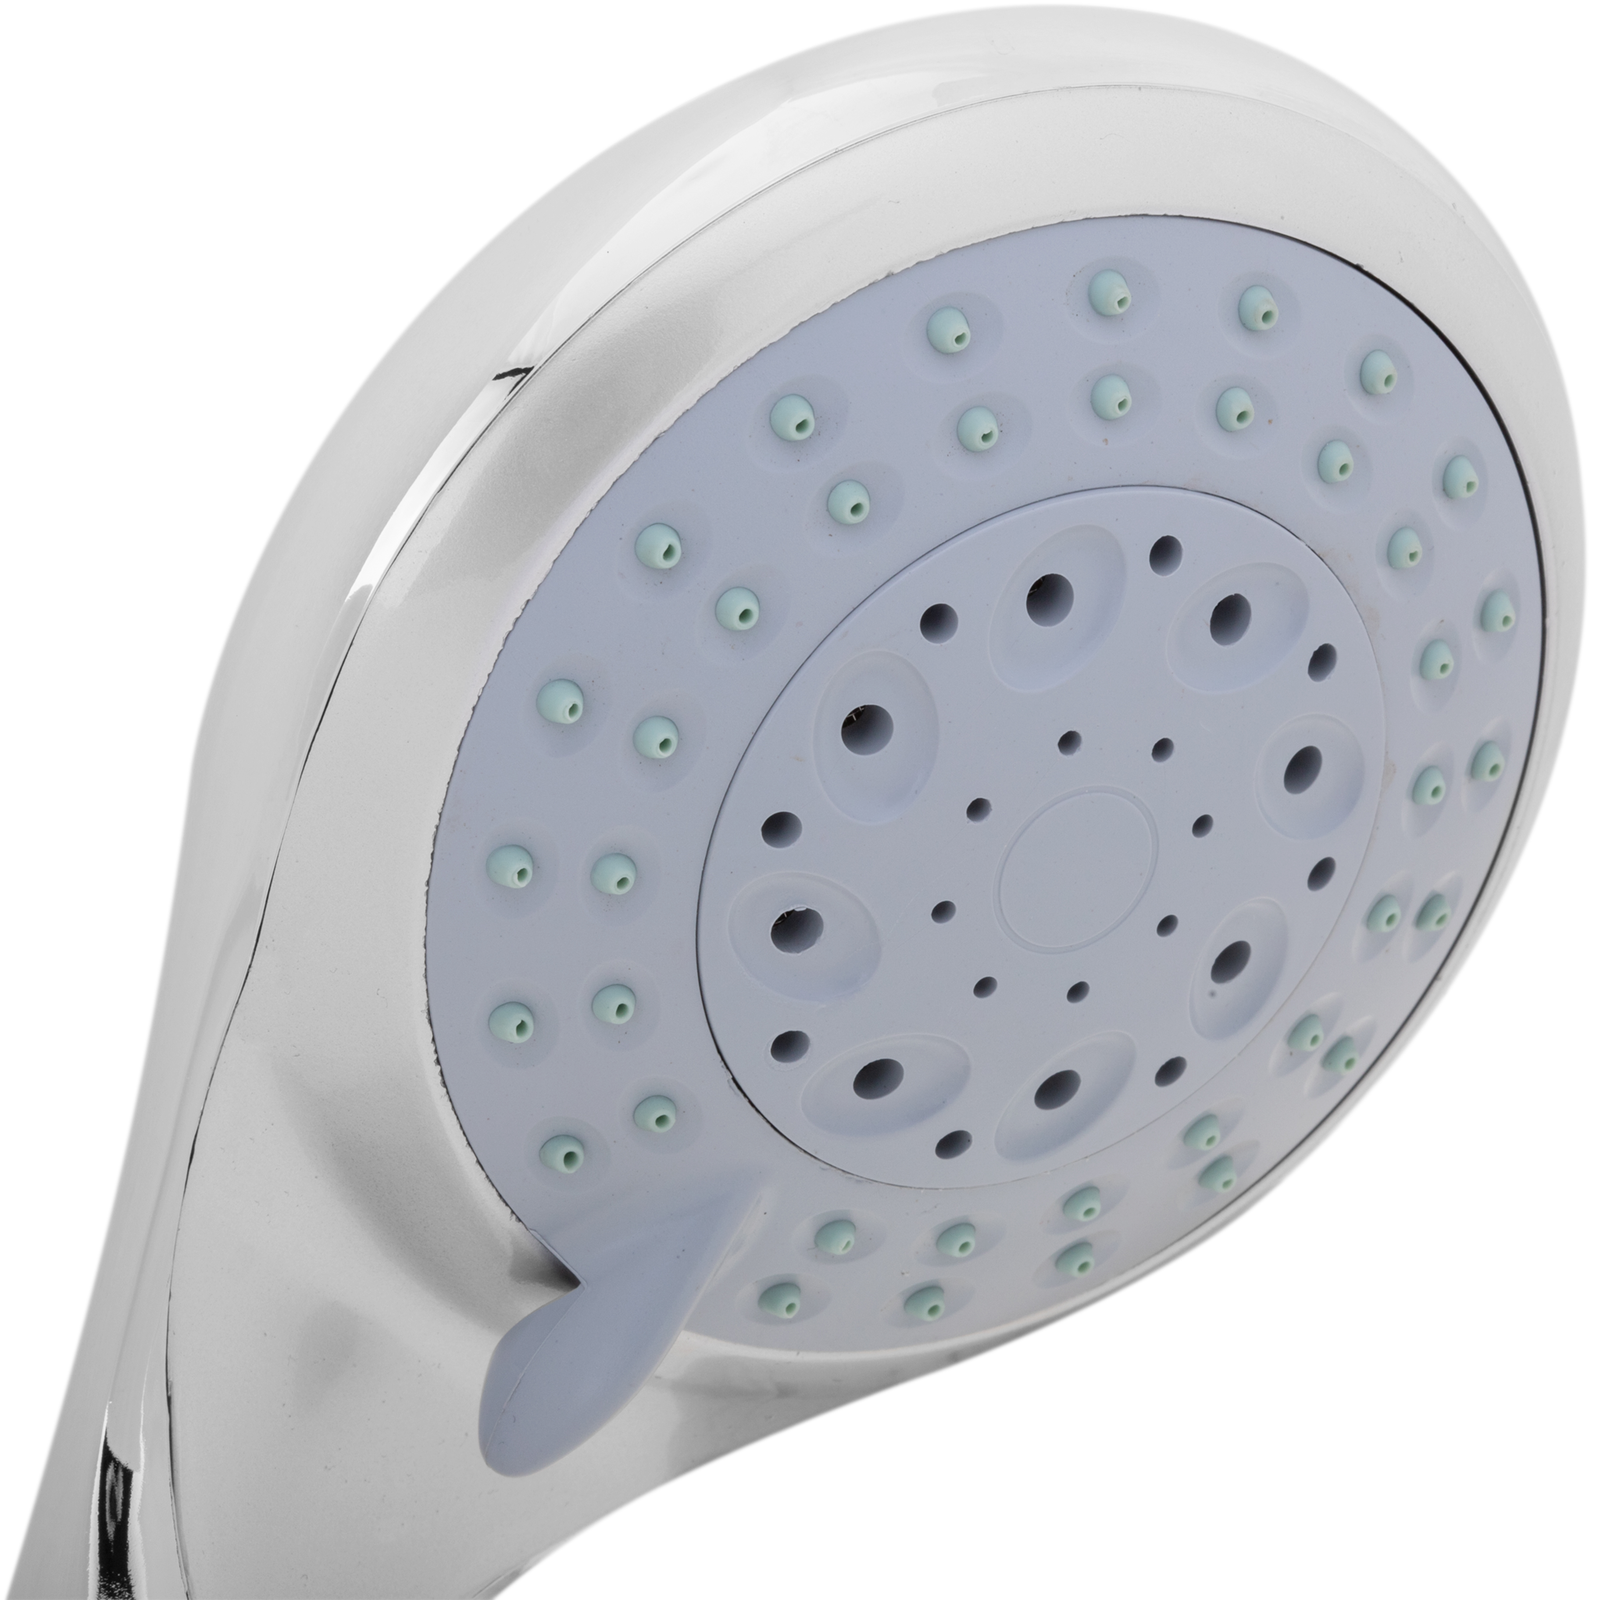 Alcachofa móvil 240mm para ducha cromado con sistema antical, ahorro de  agua y 3 funciones - Cablematic